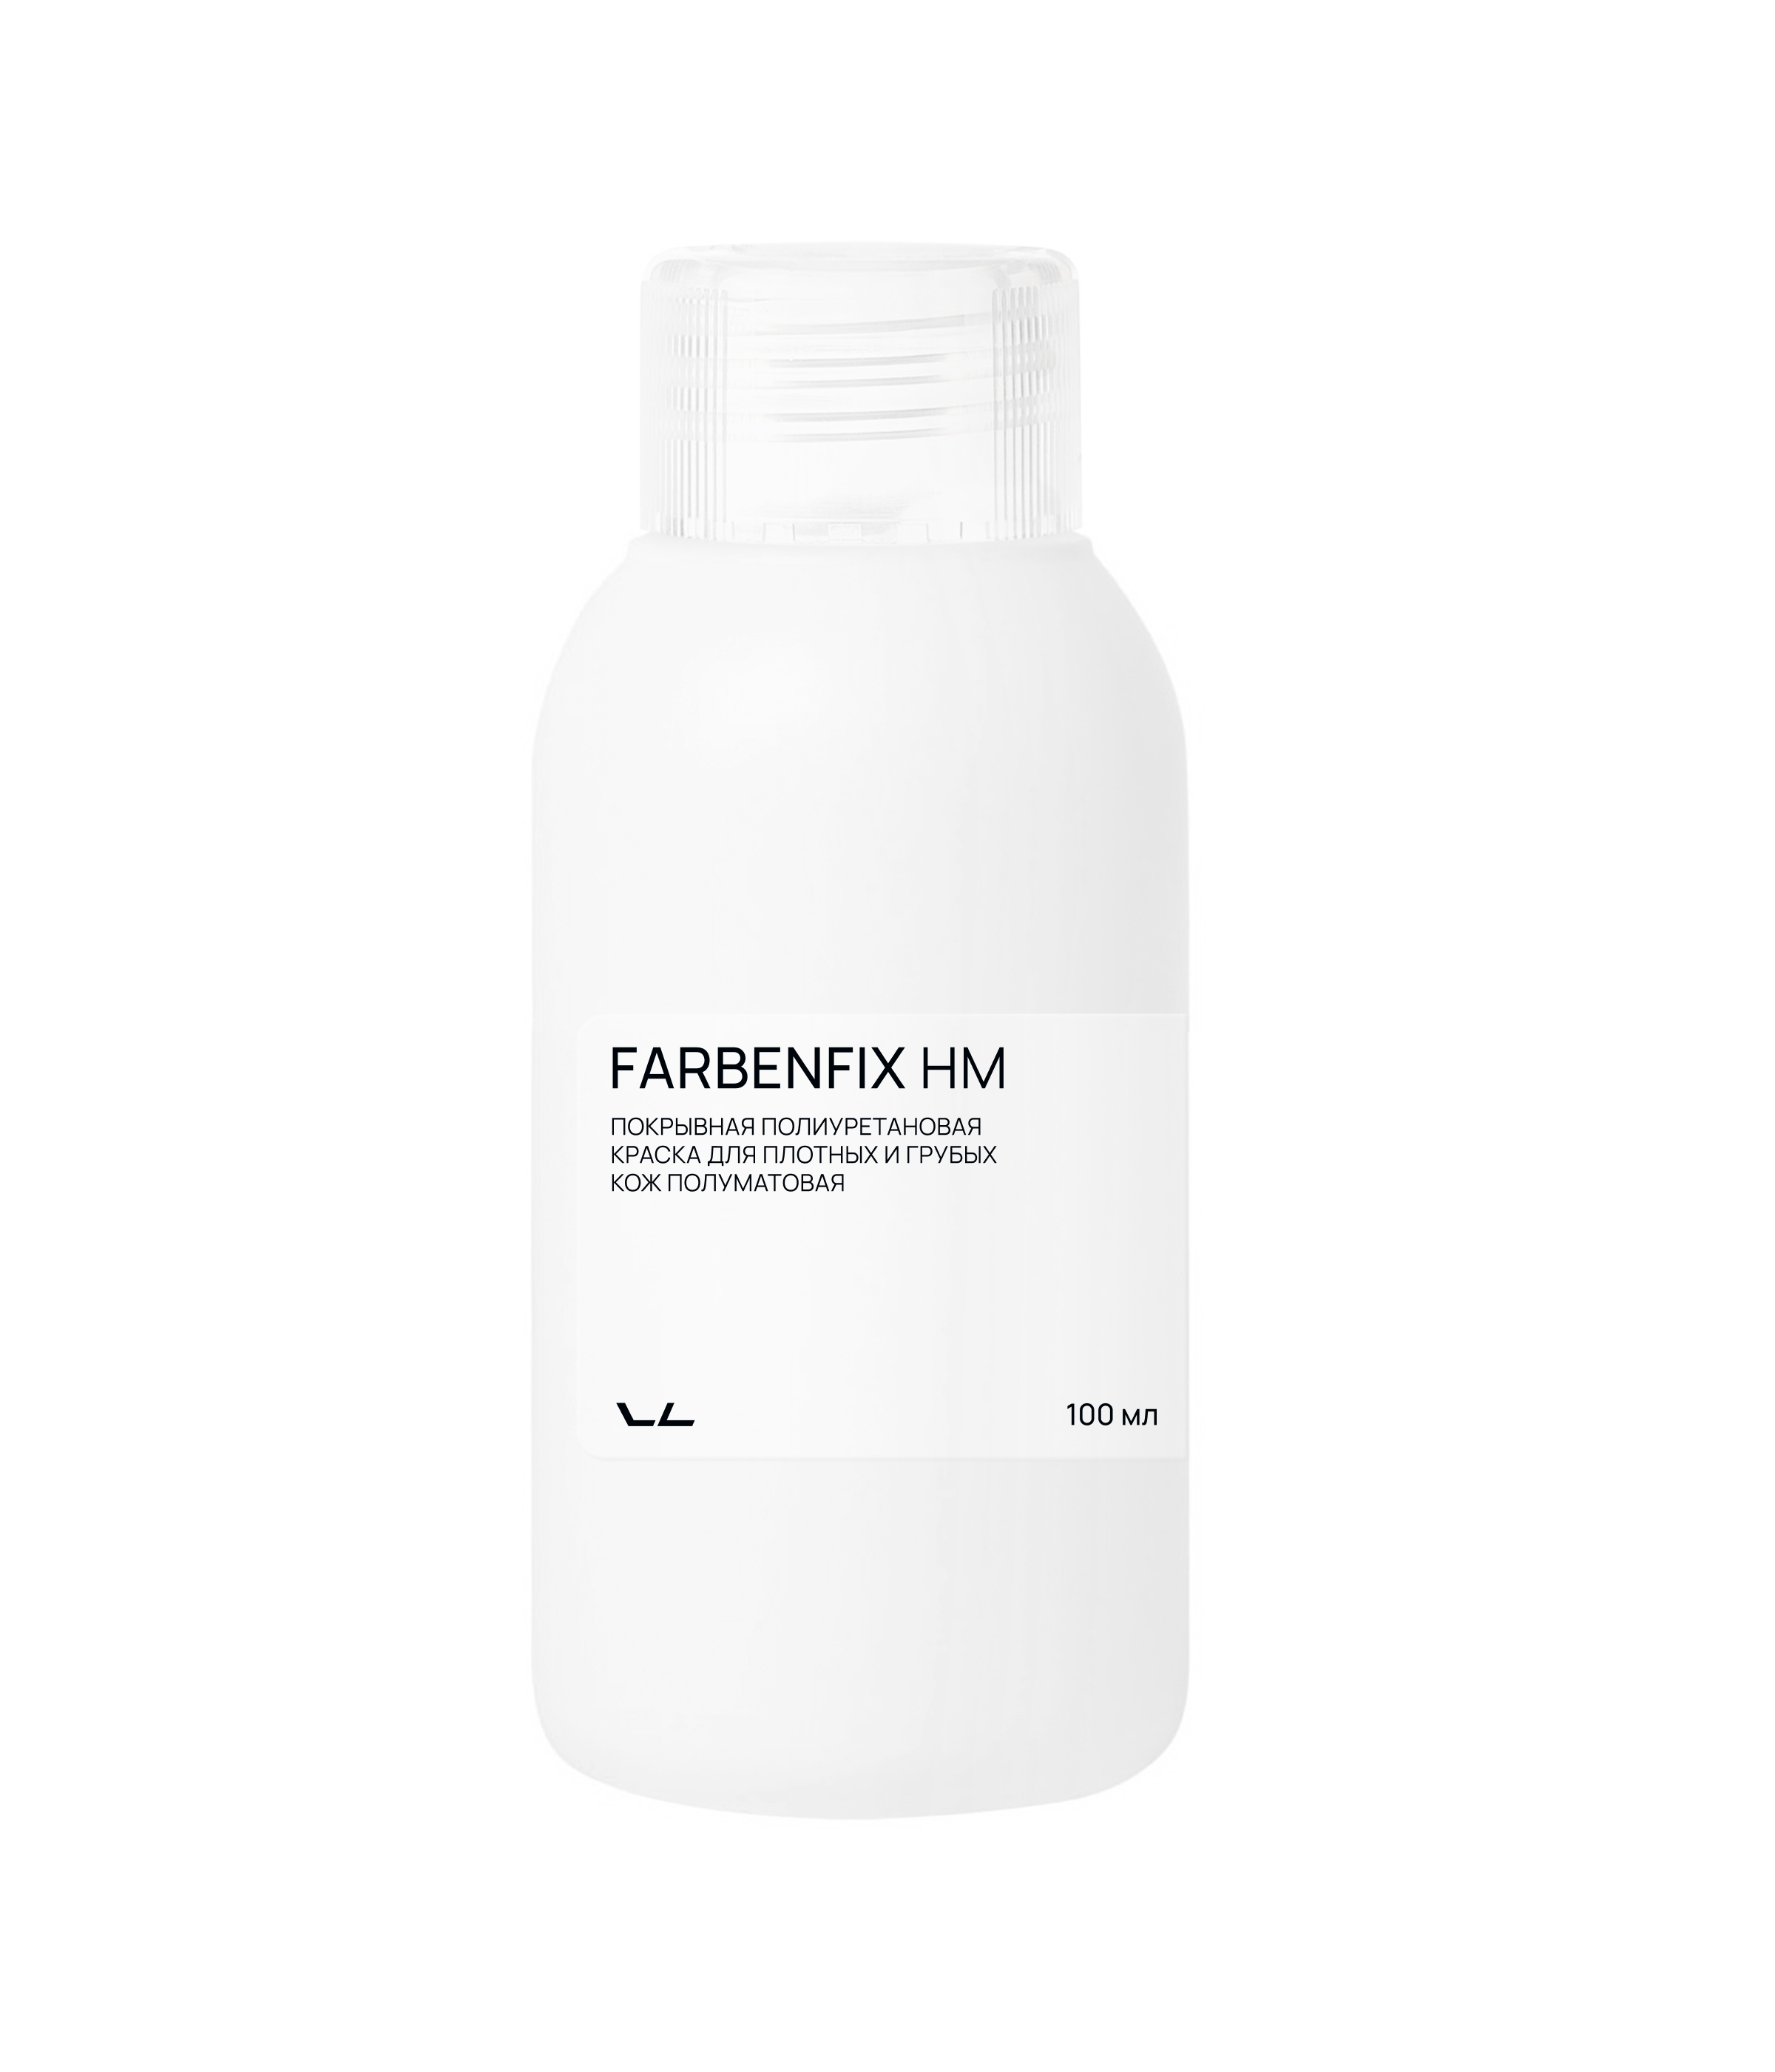 Vlotho FARBENFIX HM Покрывная полиуретановая краска для плотной и нагруженной кожи полуматовая